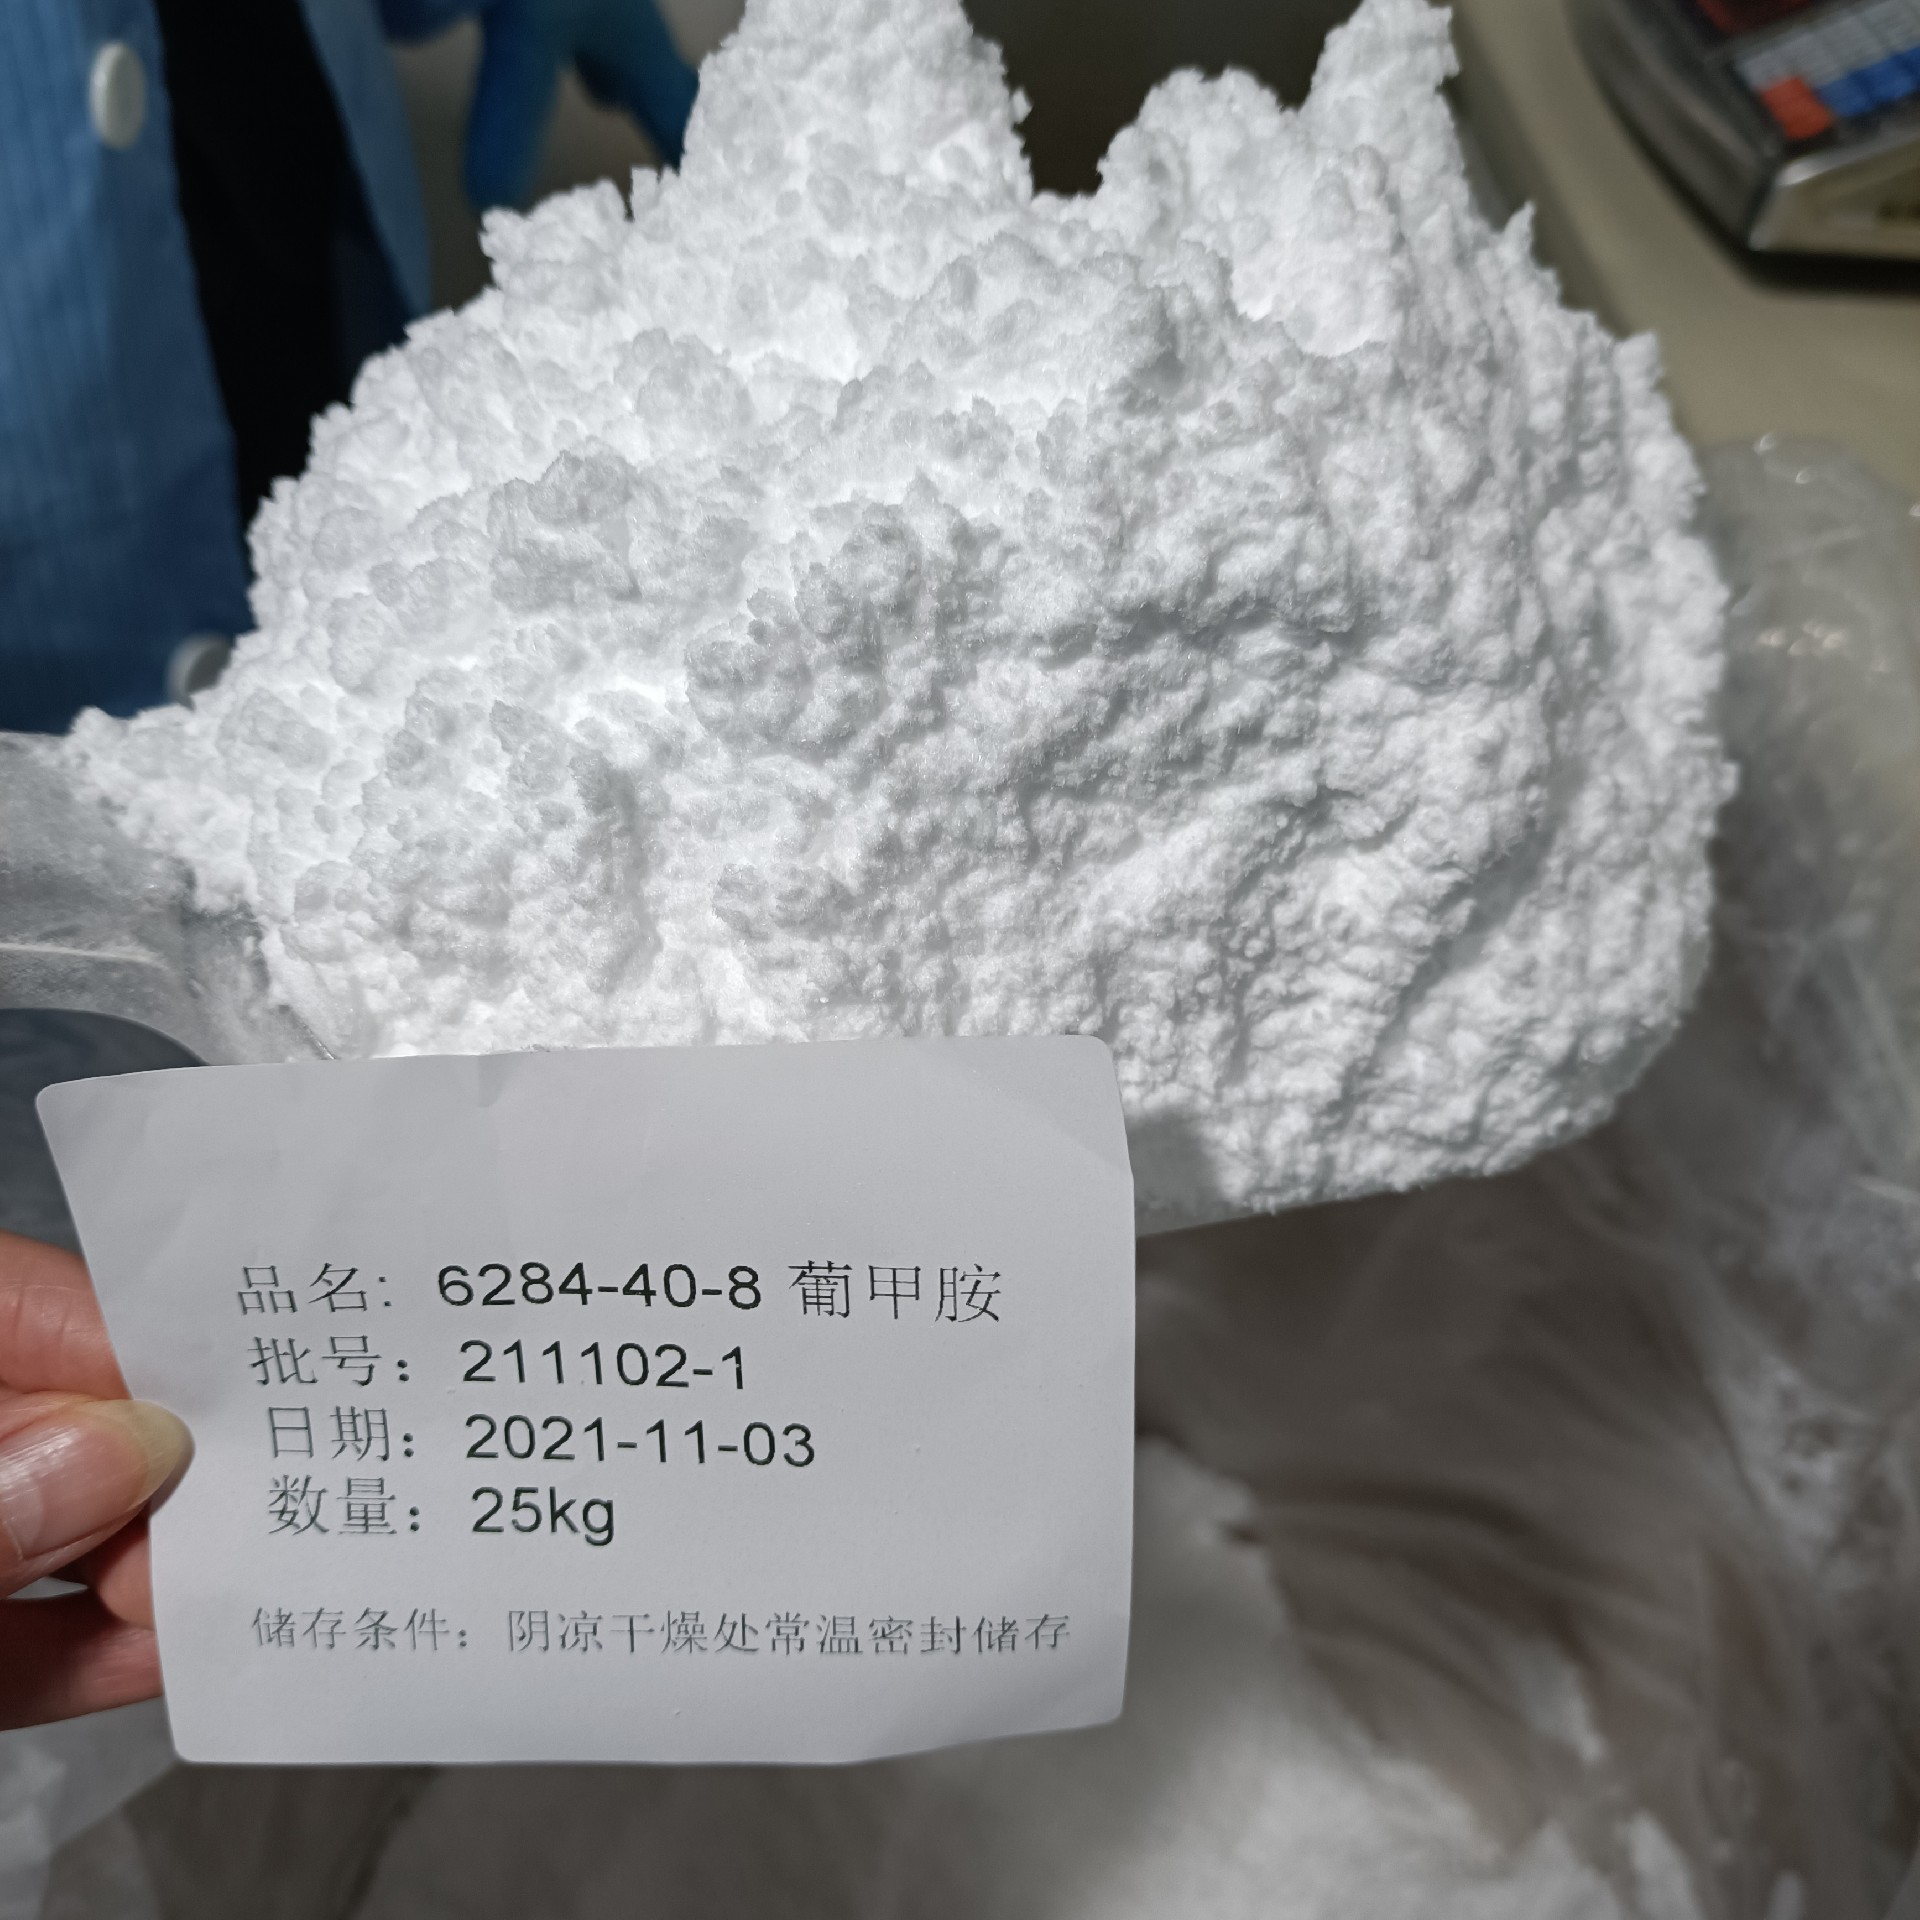 葡甲胺 白色粉末 中性标签 20211223.jpg